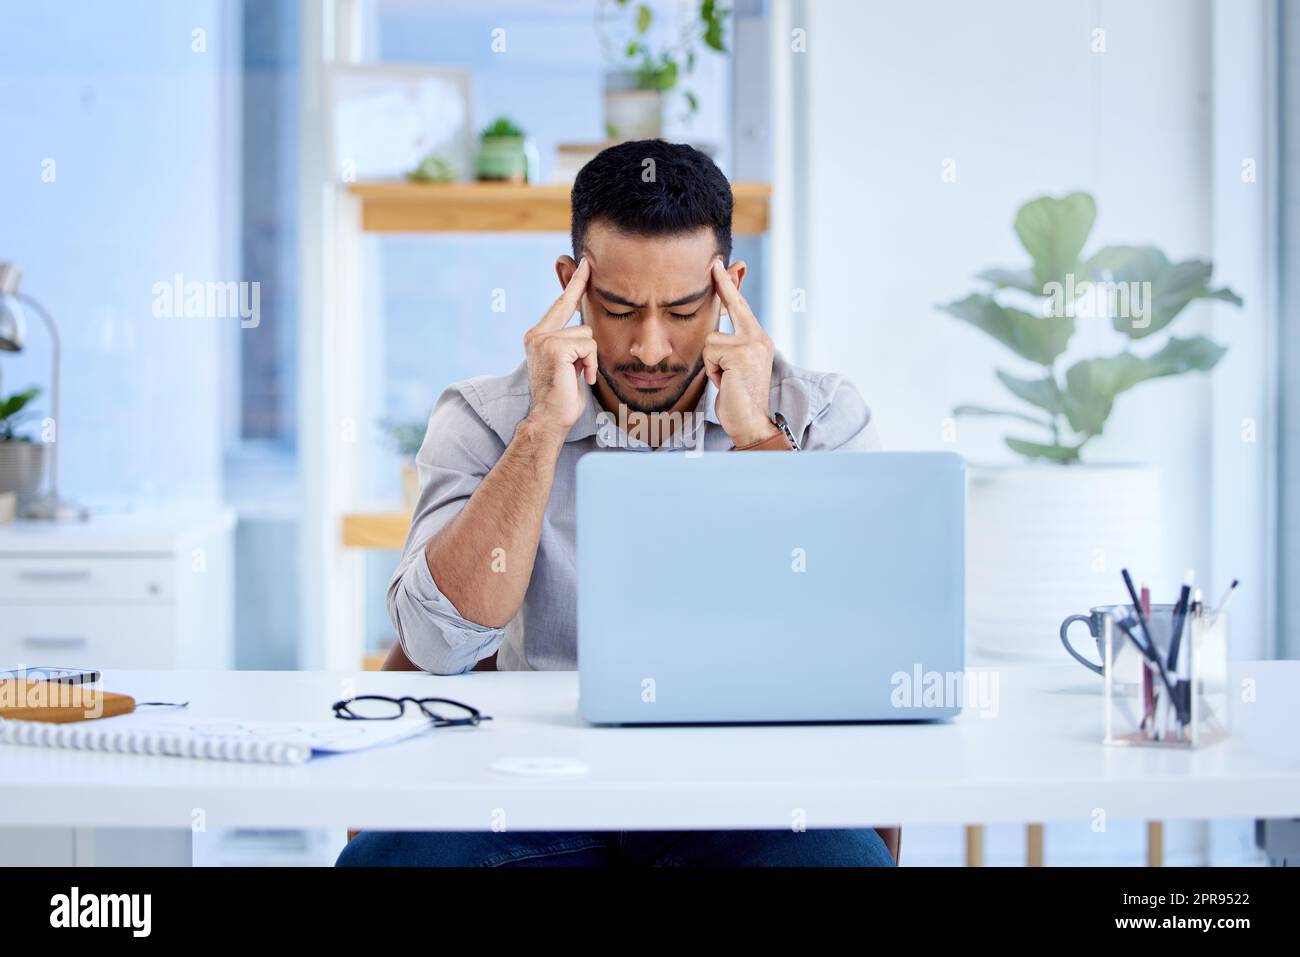 Belastet durch viele sich abzeichnende Fristen. Ein junger Geschäftsmann, der gestresst auf einem Laptop in einem Büro arbeitet. Stockfoto